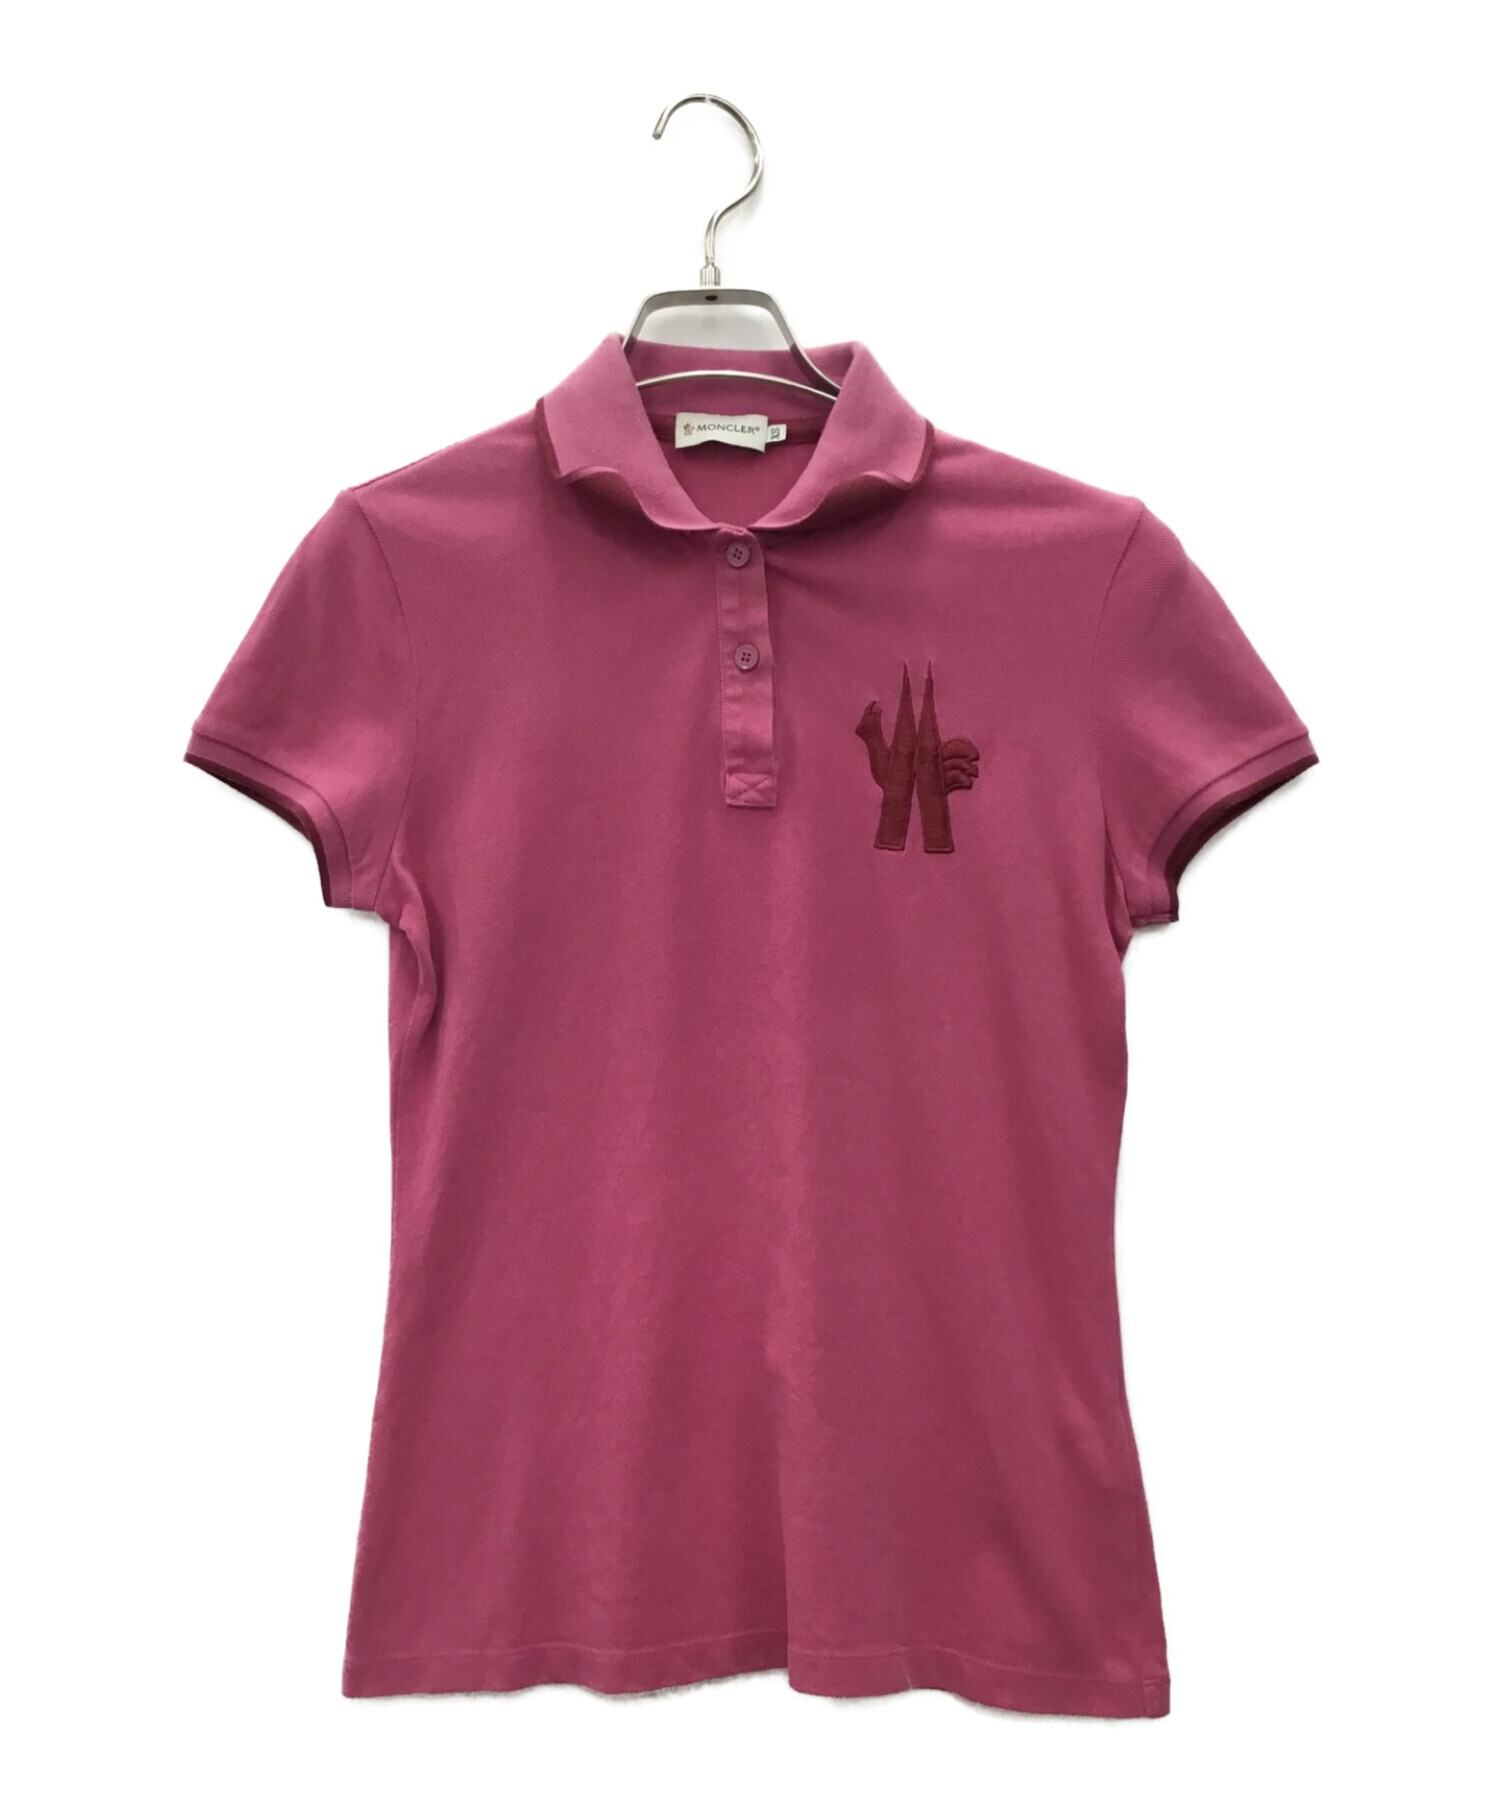 最低価格の 【美品】モンクレール MONCLER XS ピンク ポロシャツ